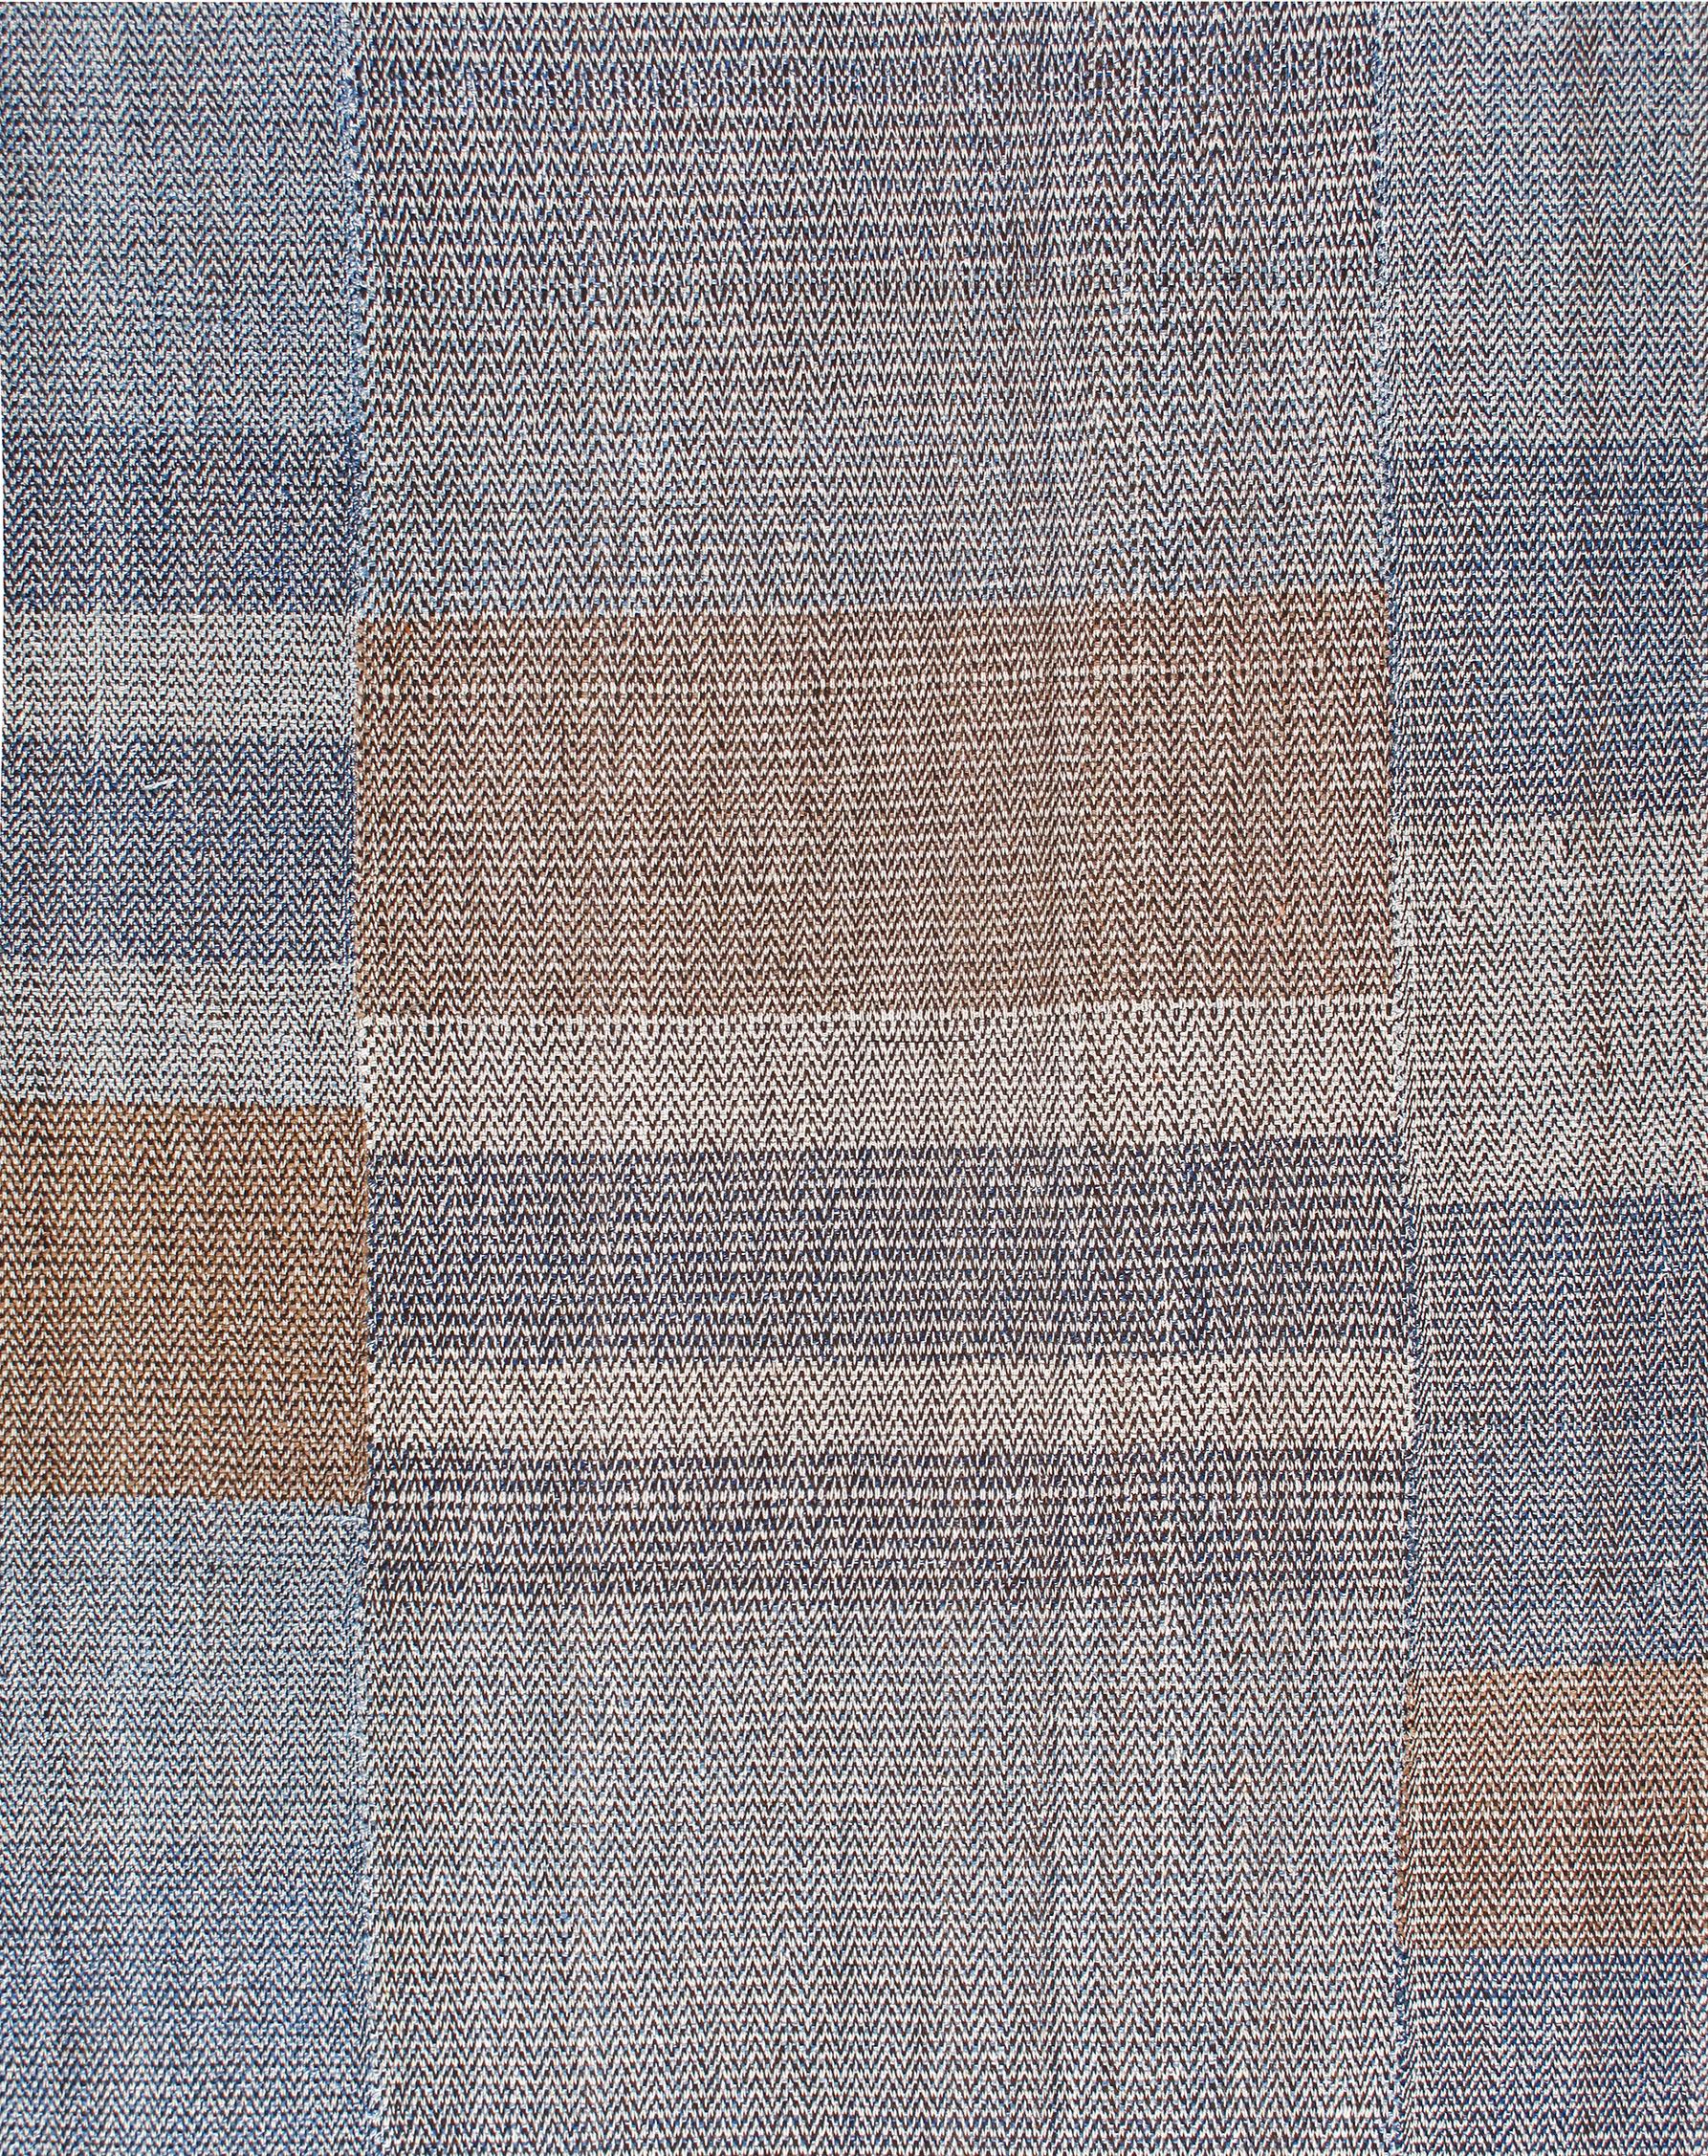 Ce tapis Charmo à tissage plat est fabriqué avec de la laine filée à la main et des teintures naturelles. Son style moderne du milieu du siècle est tissé à la main par des artisans qualifiés qui entrecroisent les fils de chaîne et de trame sur un